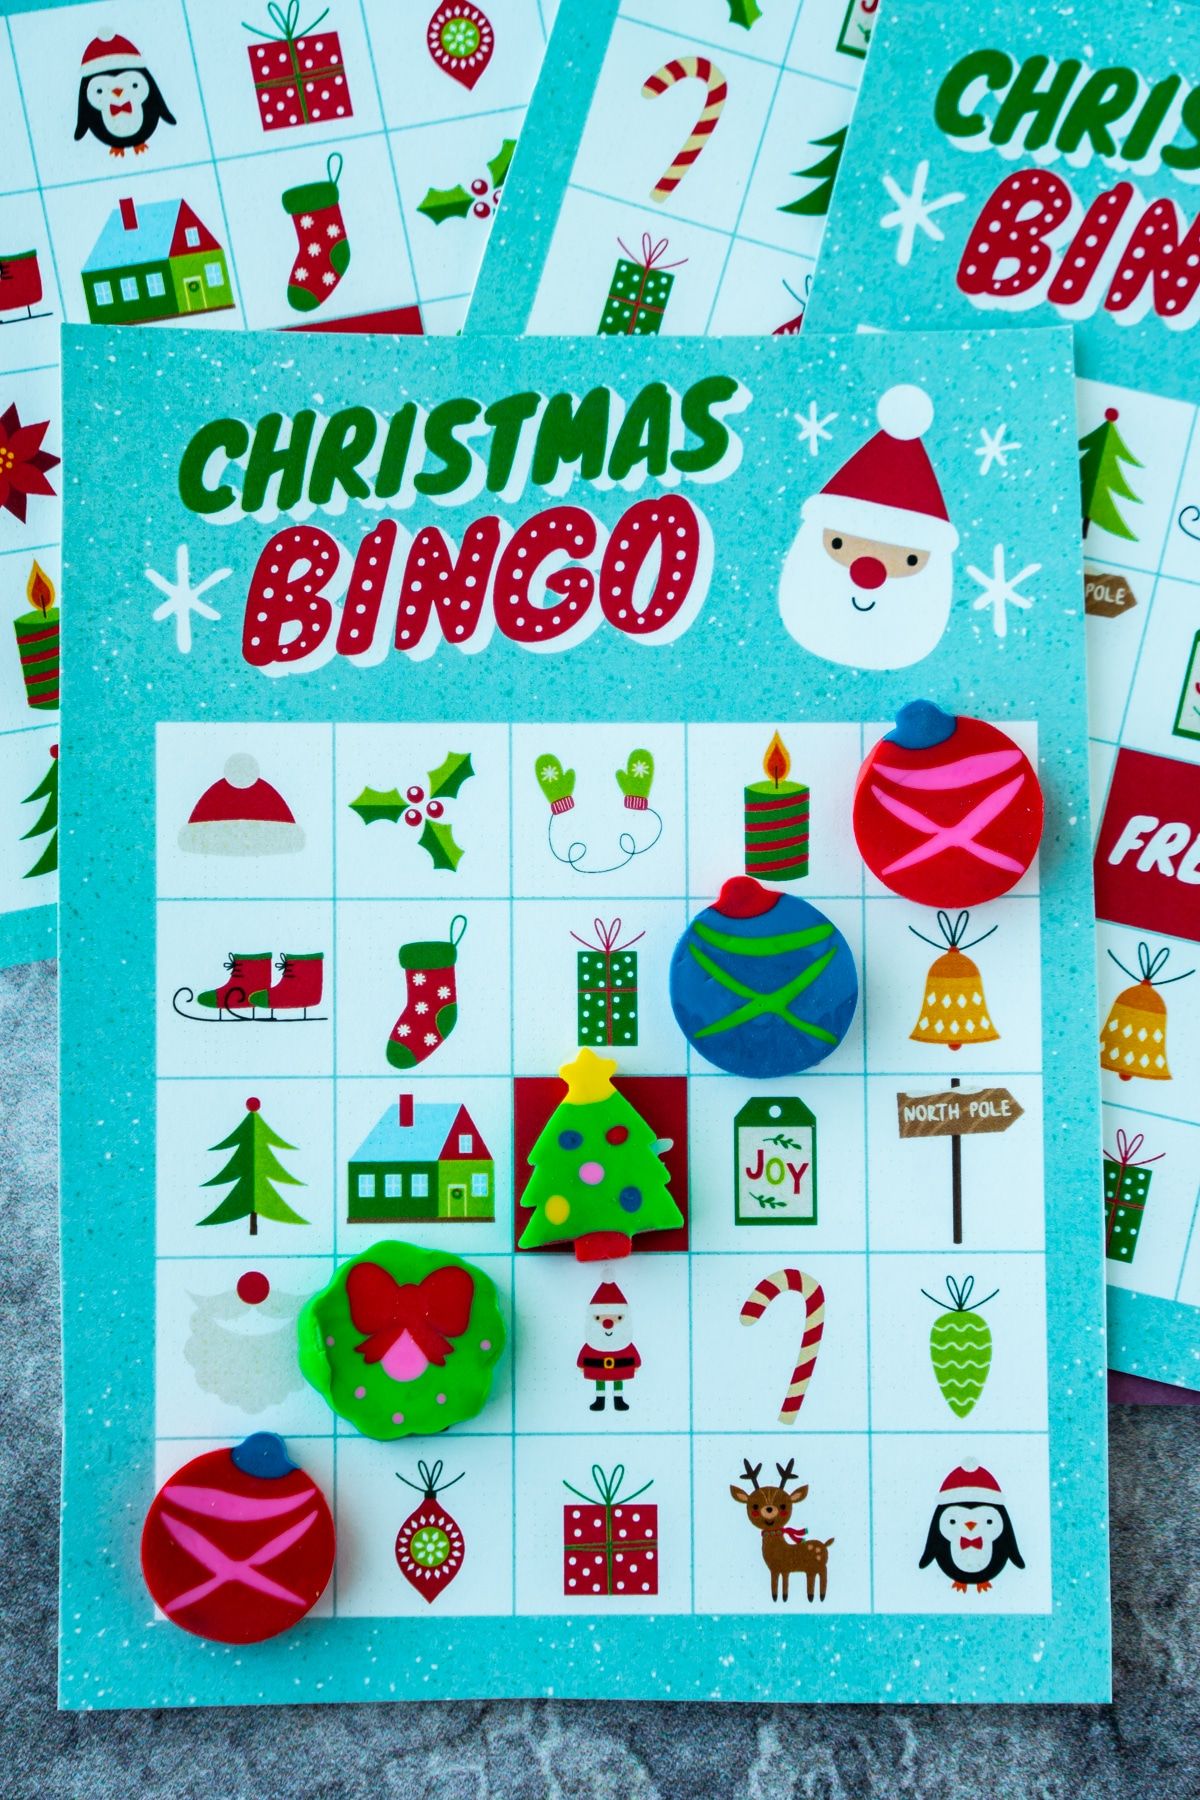 Božična bingo karta z božičnimi radirkami v vrsti